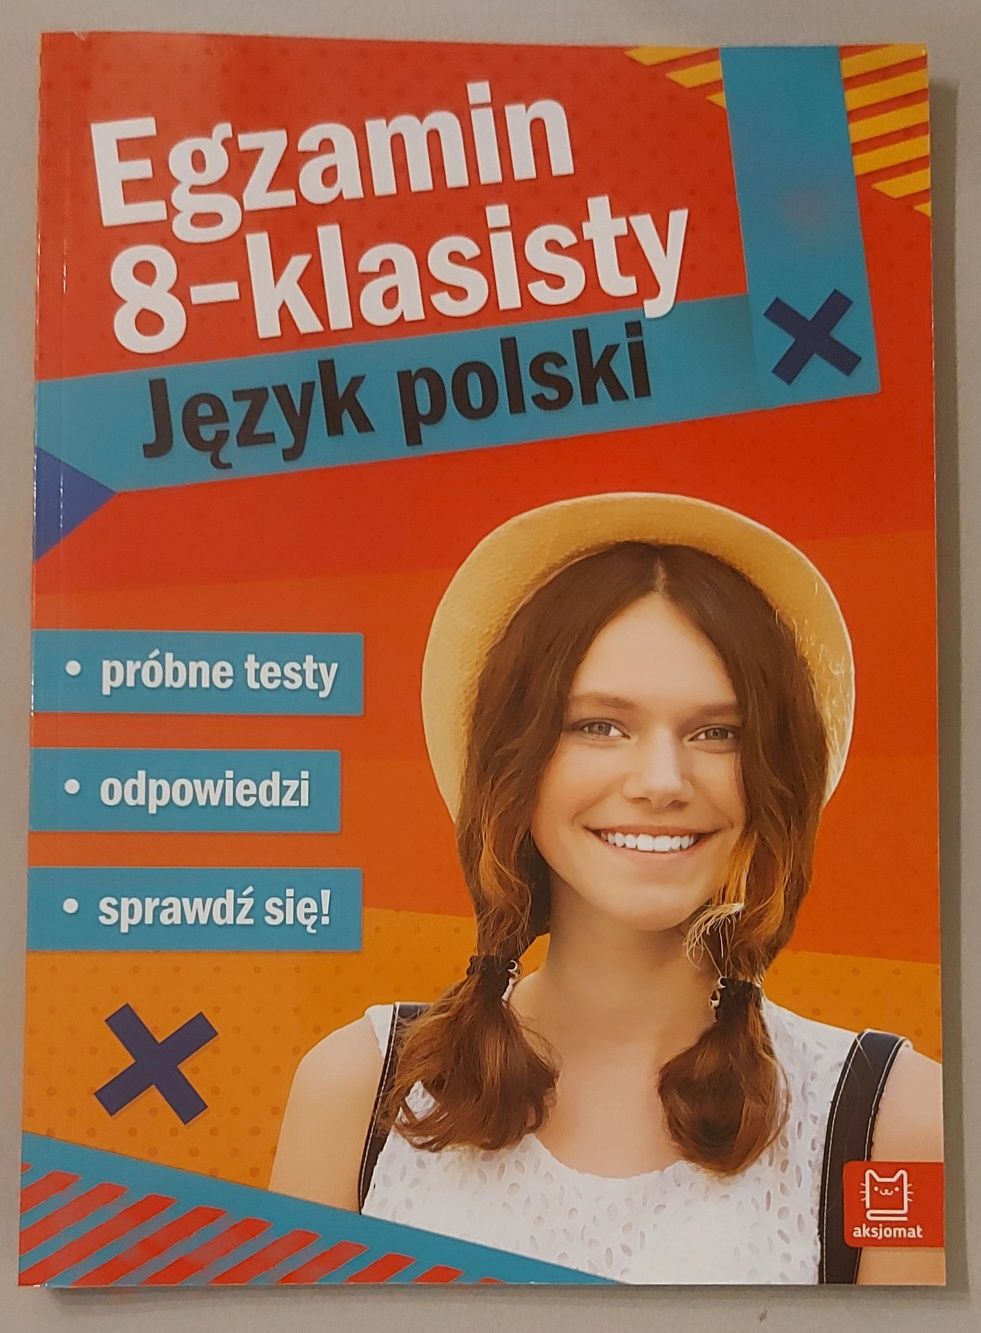 Egzamin 8-klasisty Język polski